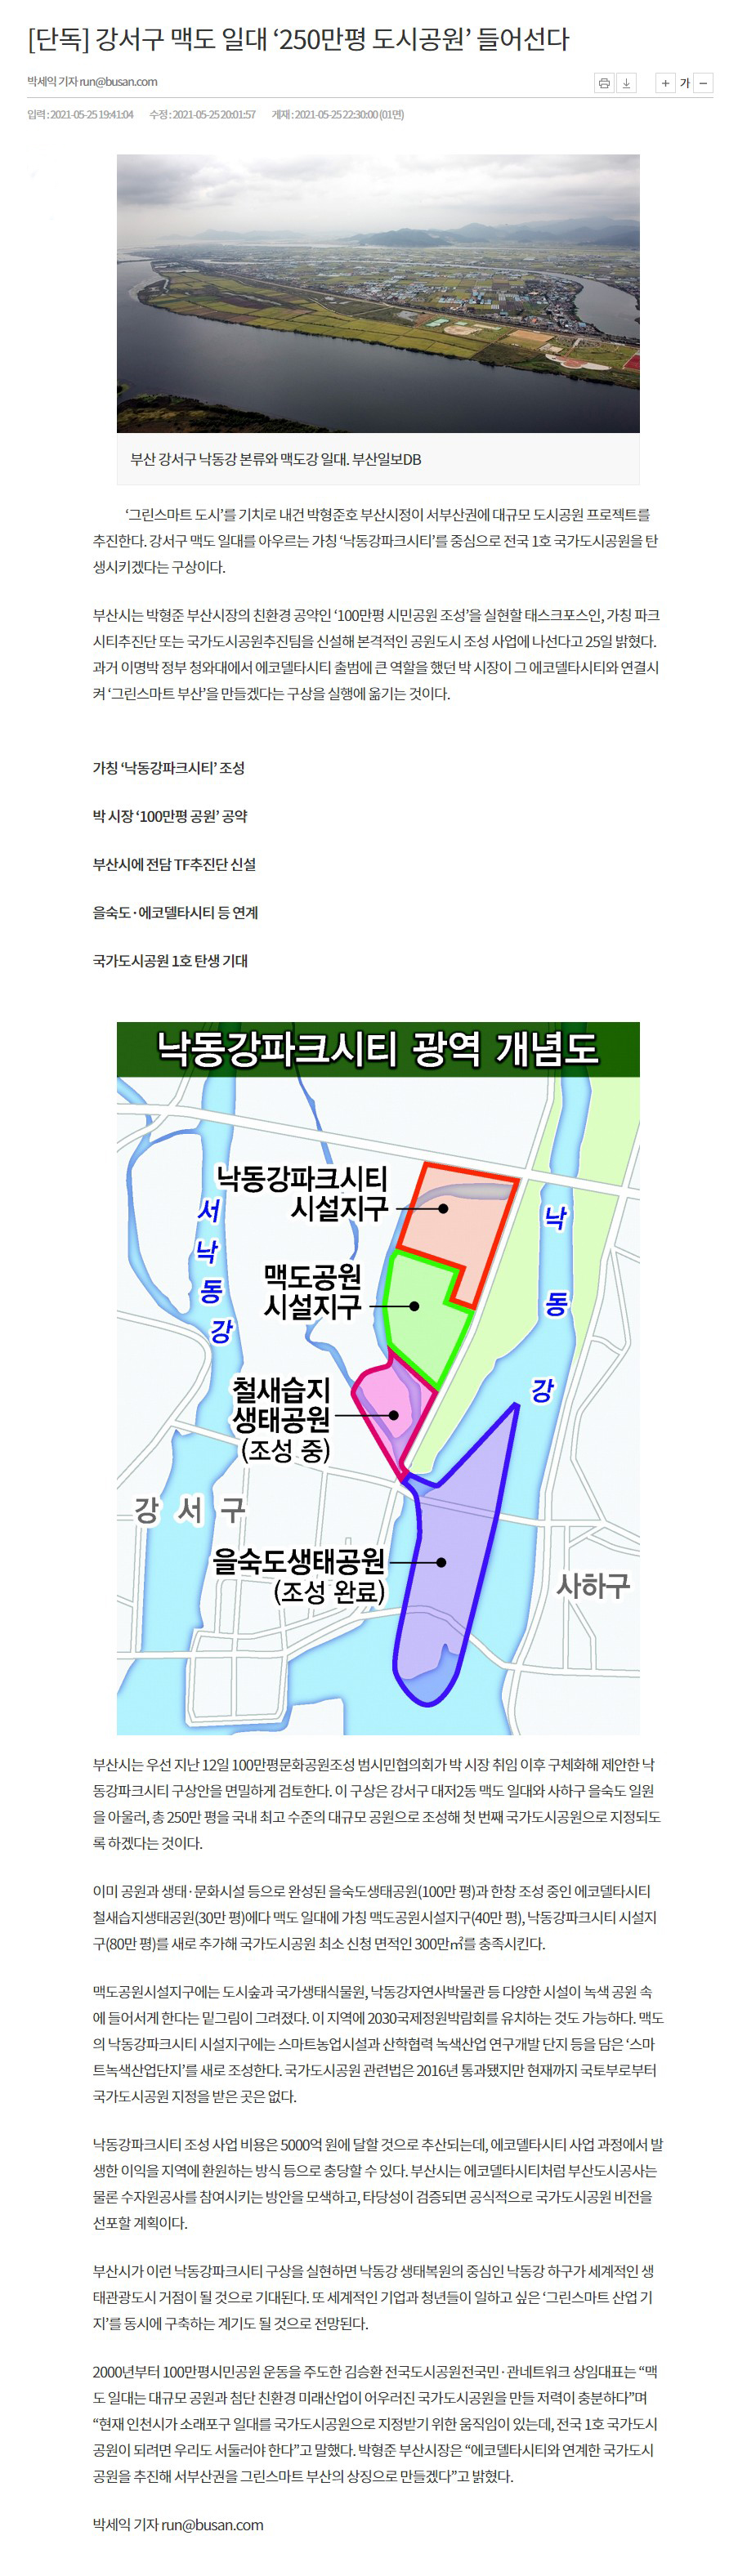 2021-05-26 부산일보.jpg